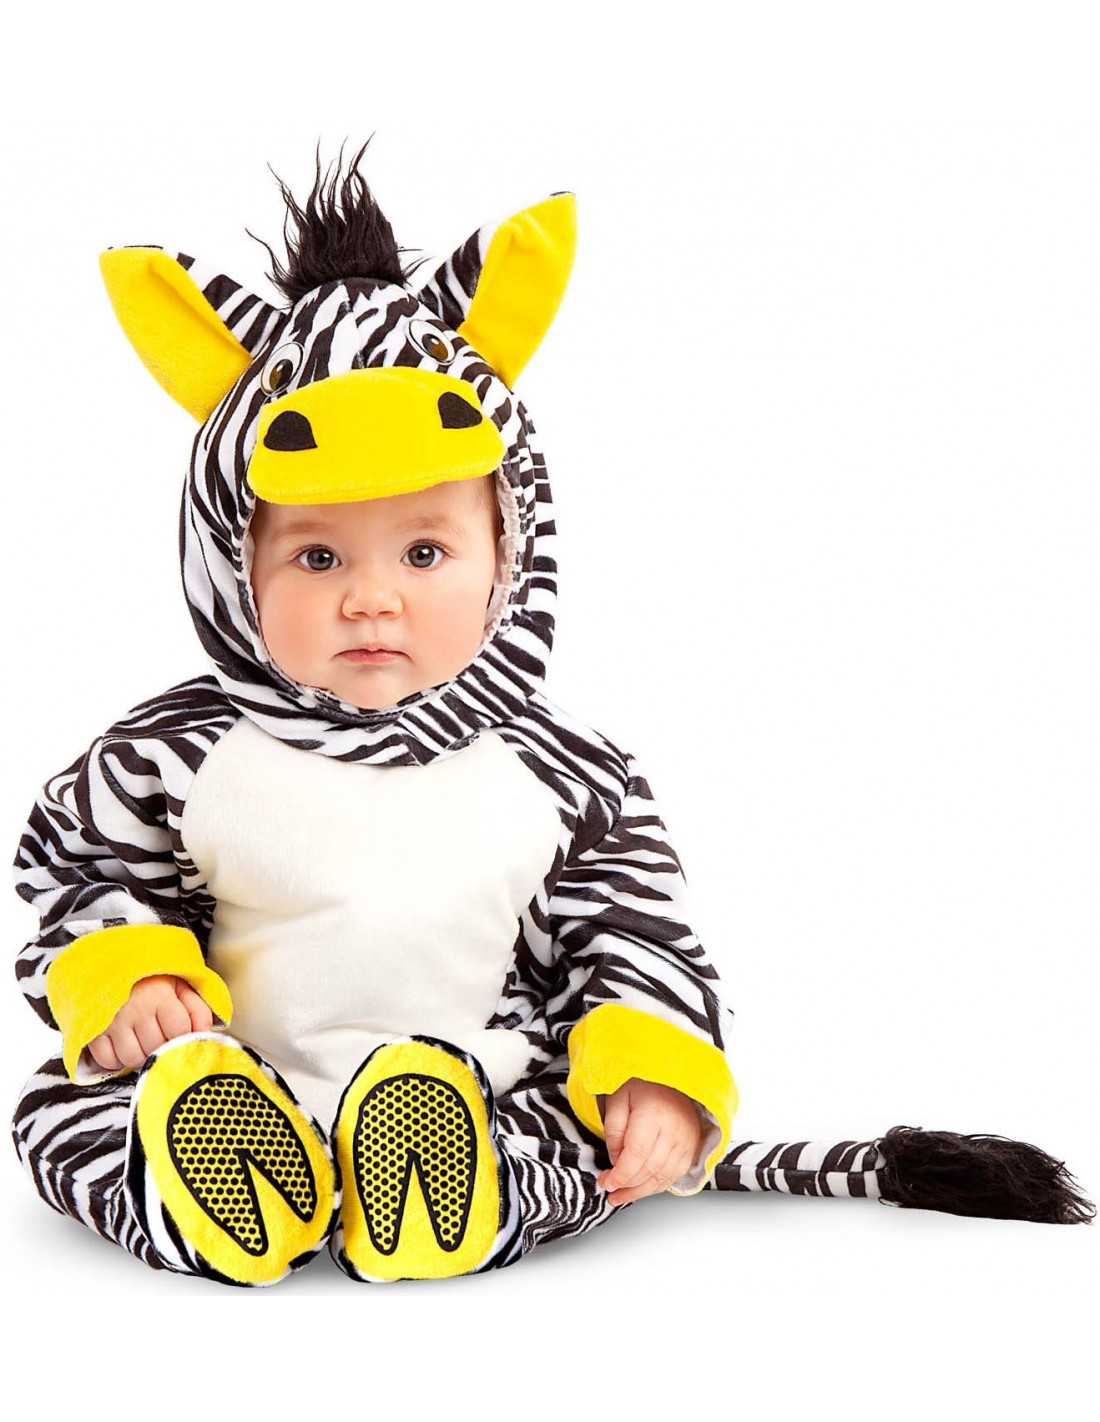 Comprar online Disfraz de Cazafantasmas para beb